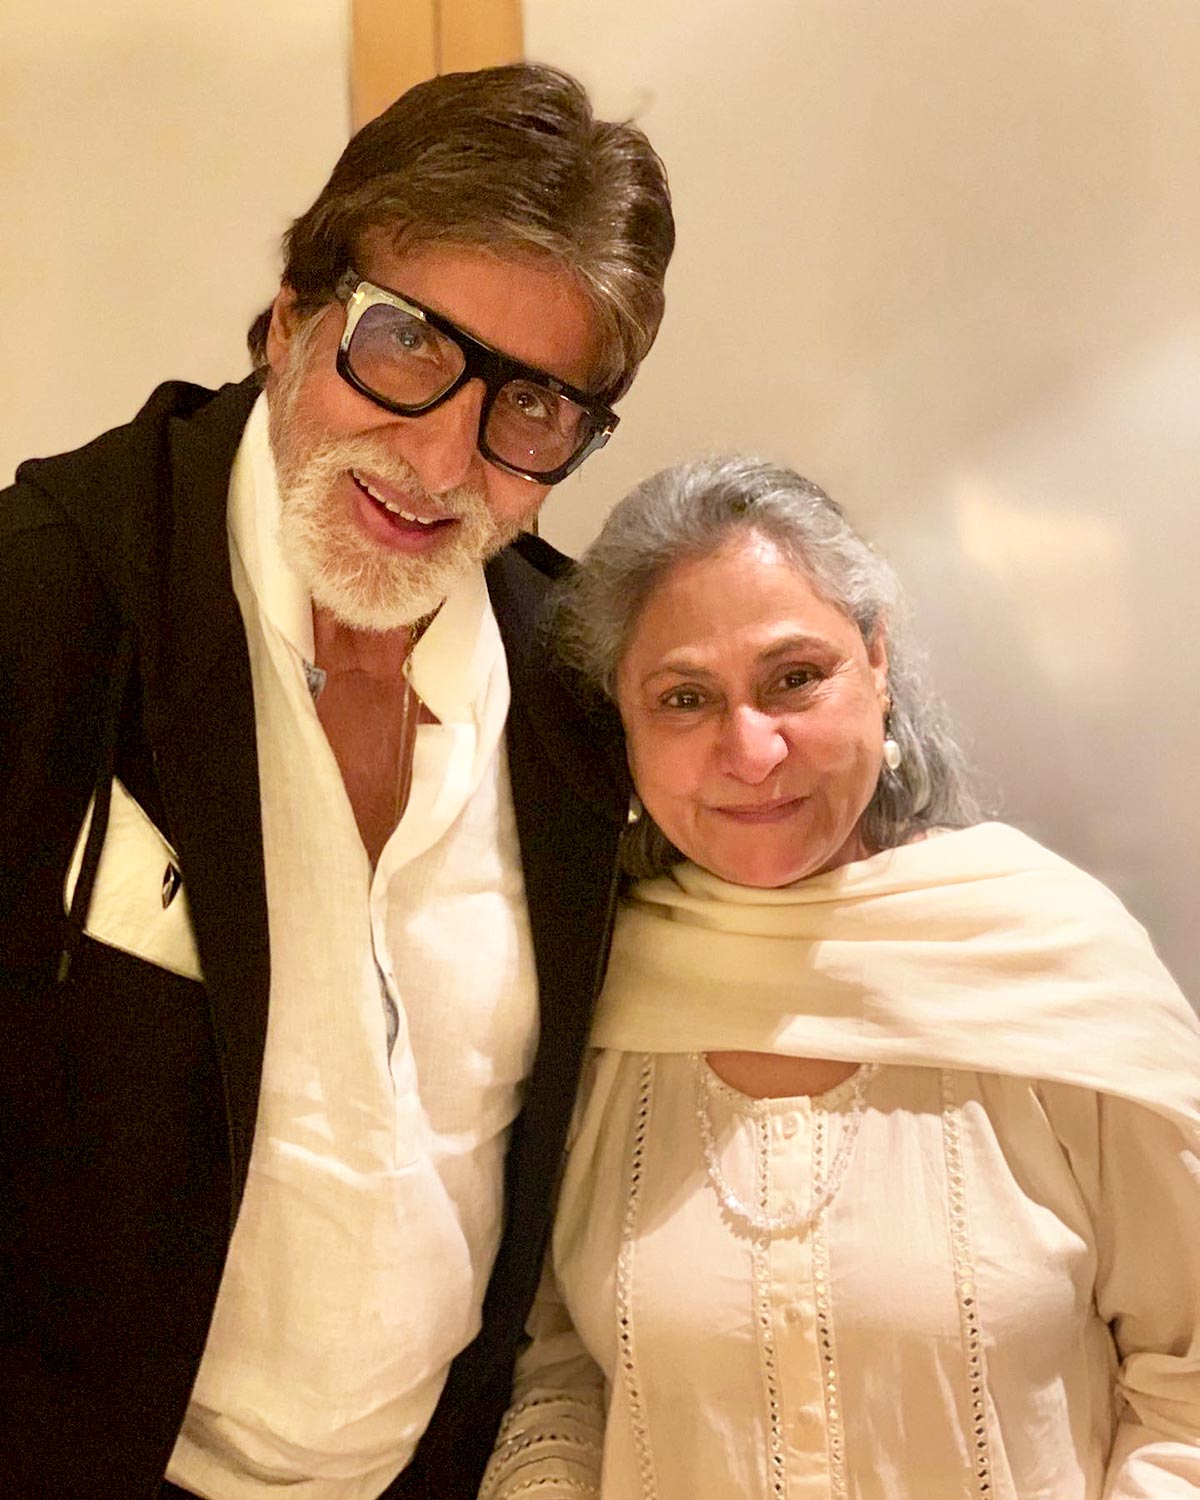 Jaya Bachchan and Amitabh Bachchan kundli analysis